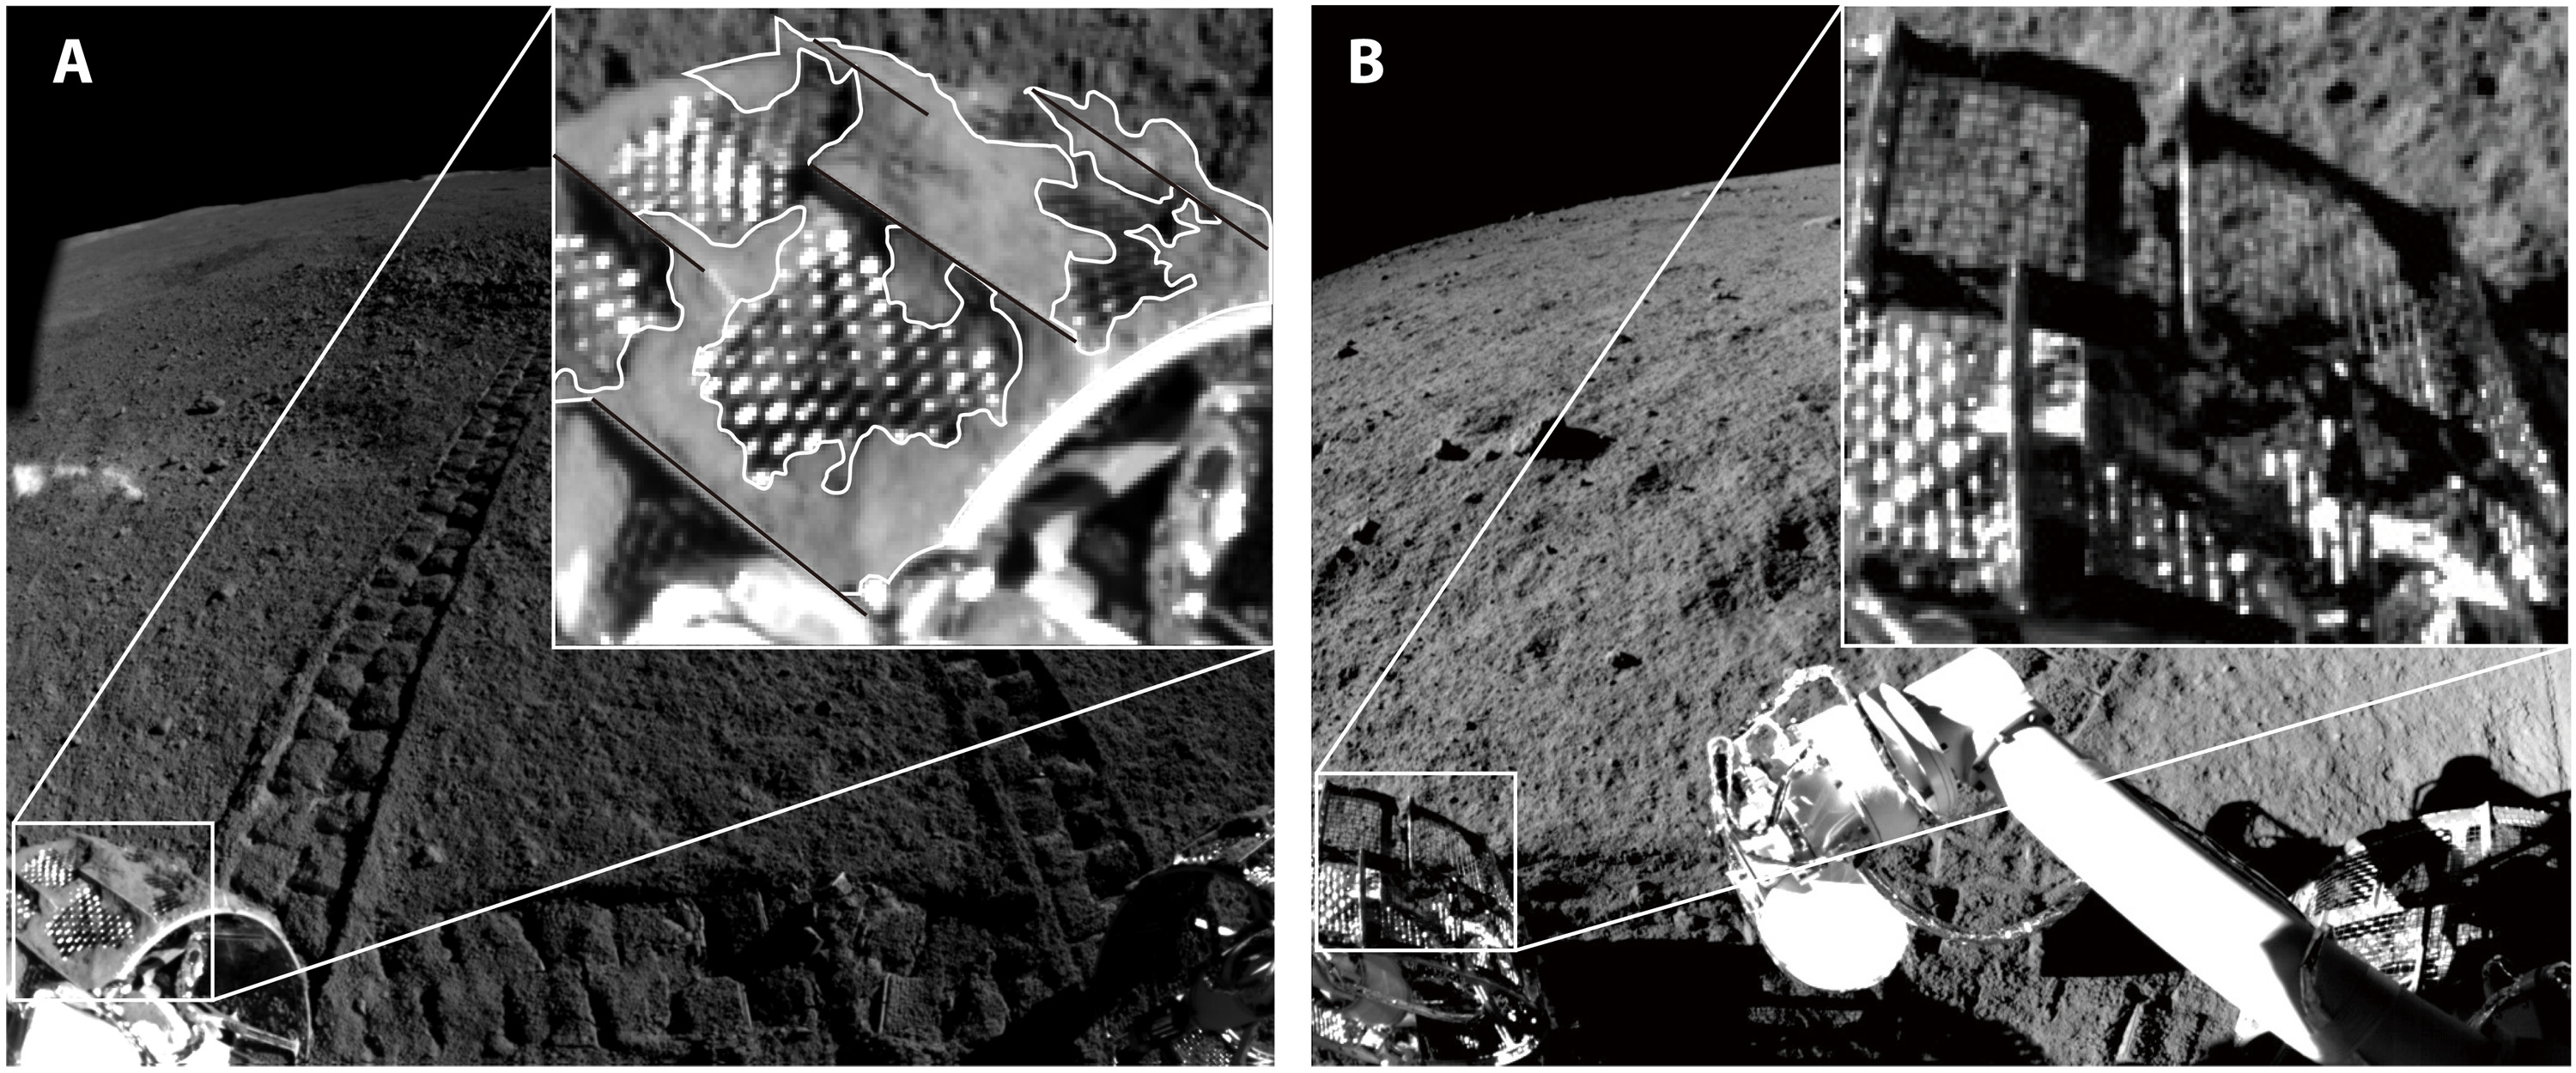 Шматки місячного ґрунту, що налипли на переднє праве колесо ровера, порівняно з його попередником, місяцеходом «Юйту», який працював на видимому боці супутника. L. Ding et al. / Science Robotics, 2021